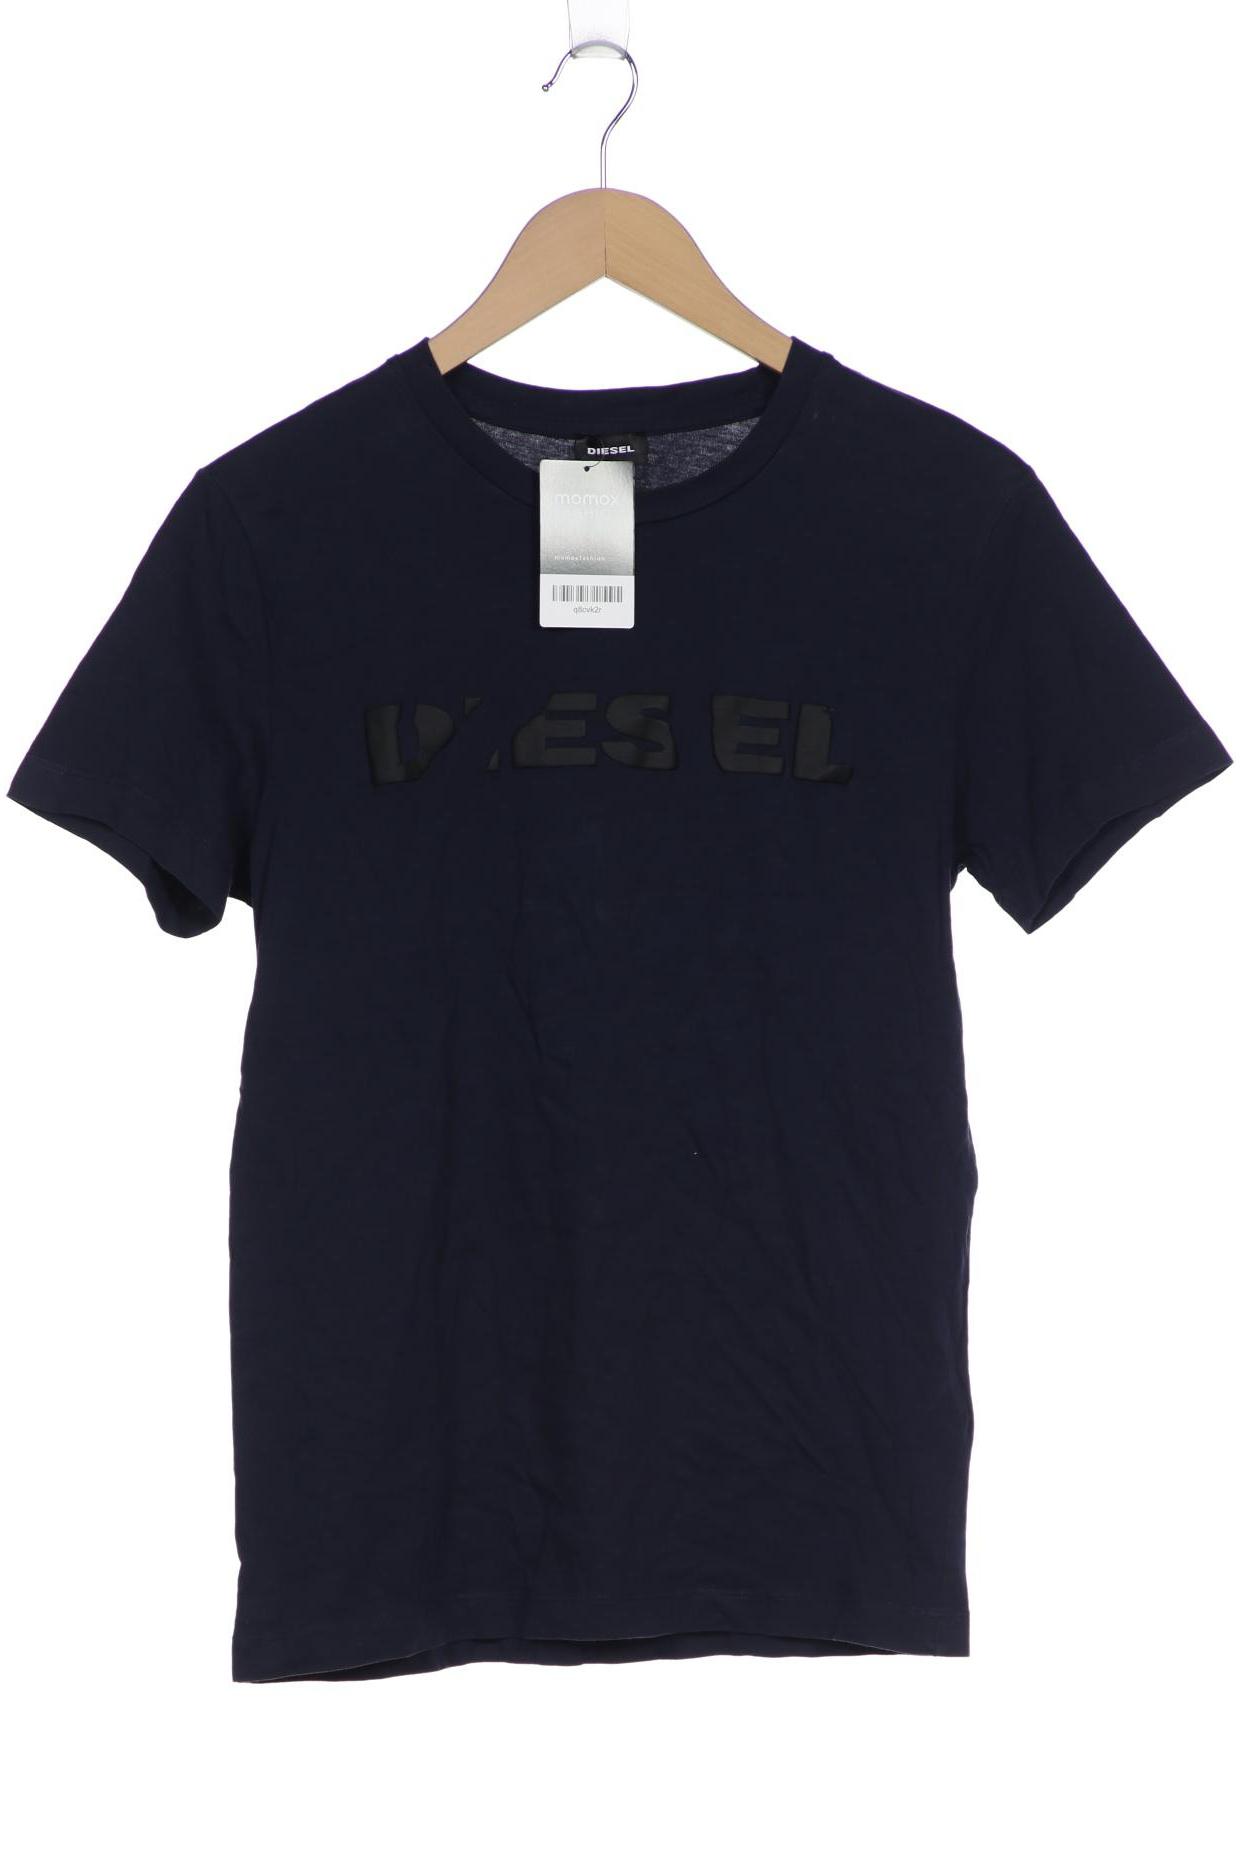 Diesel Herren T-Shirt, marineblau, Gr. 46 von Diesel